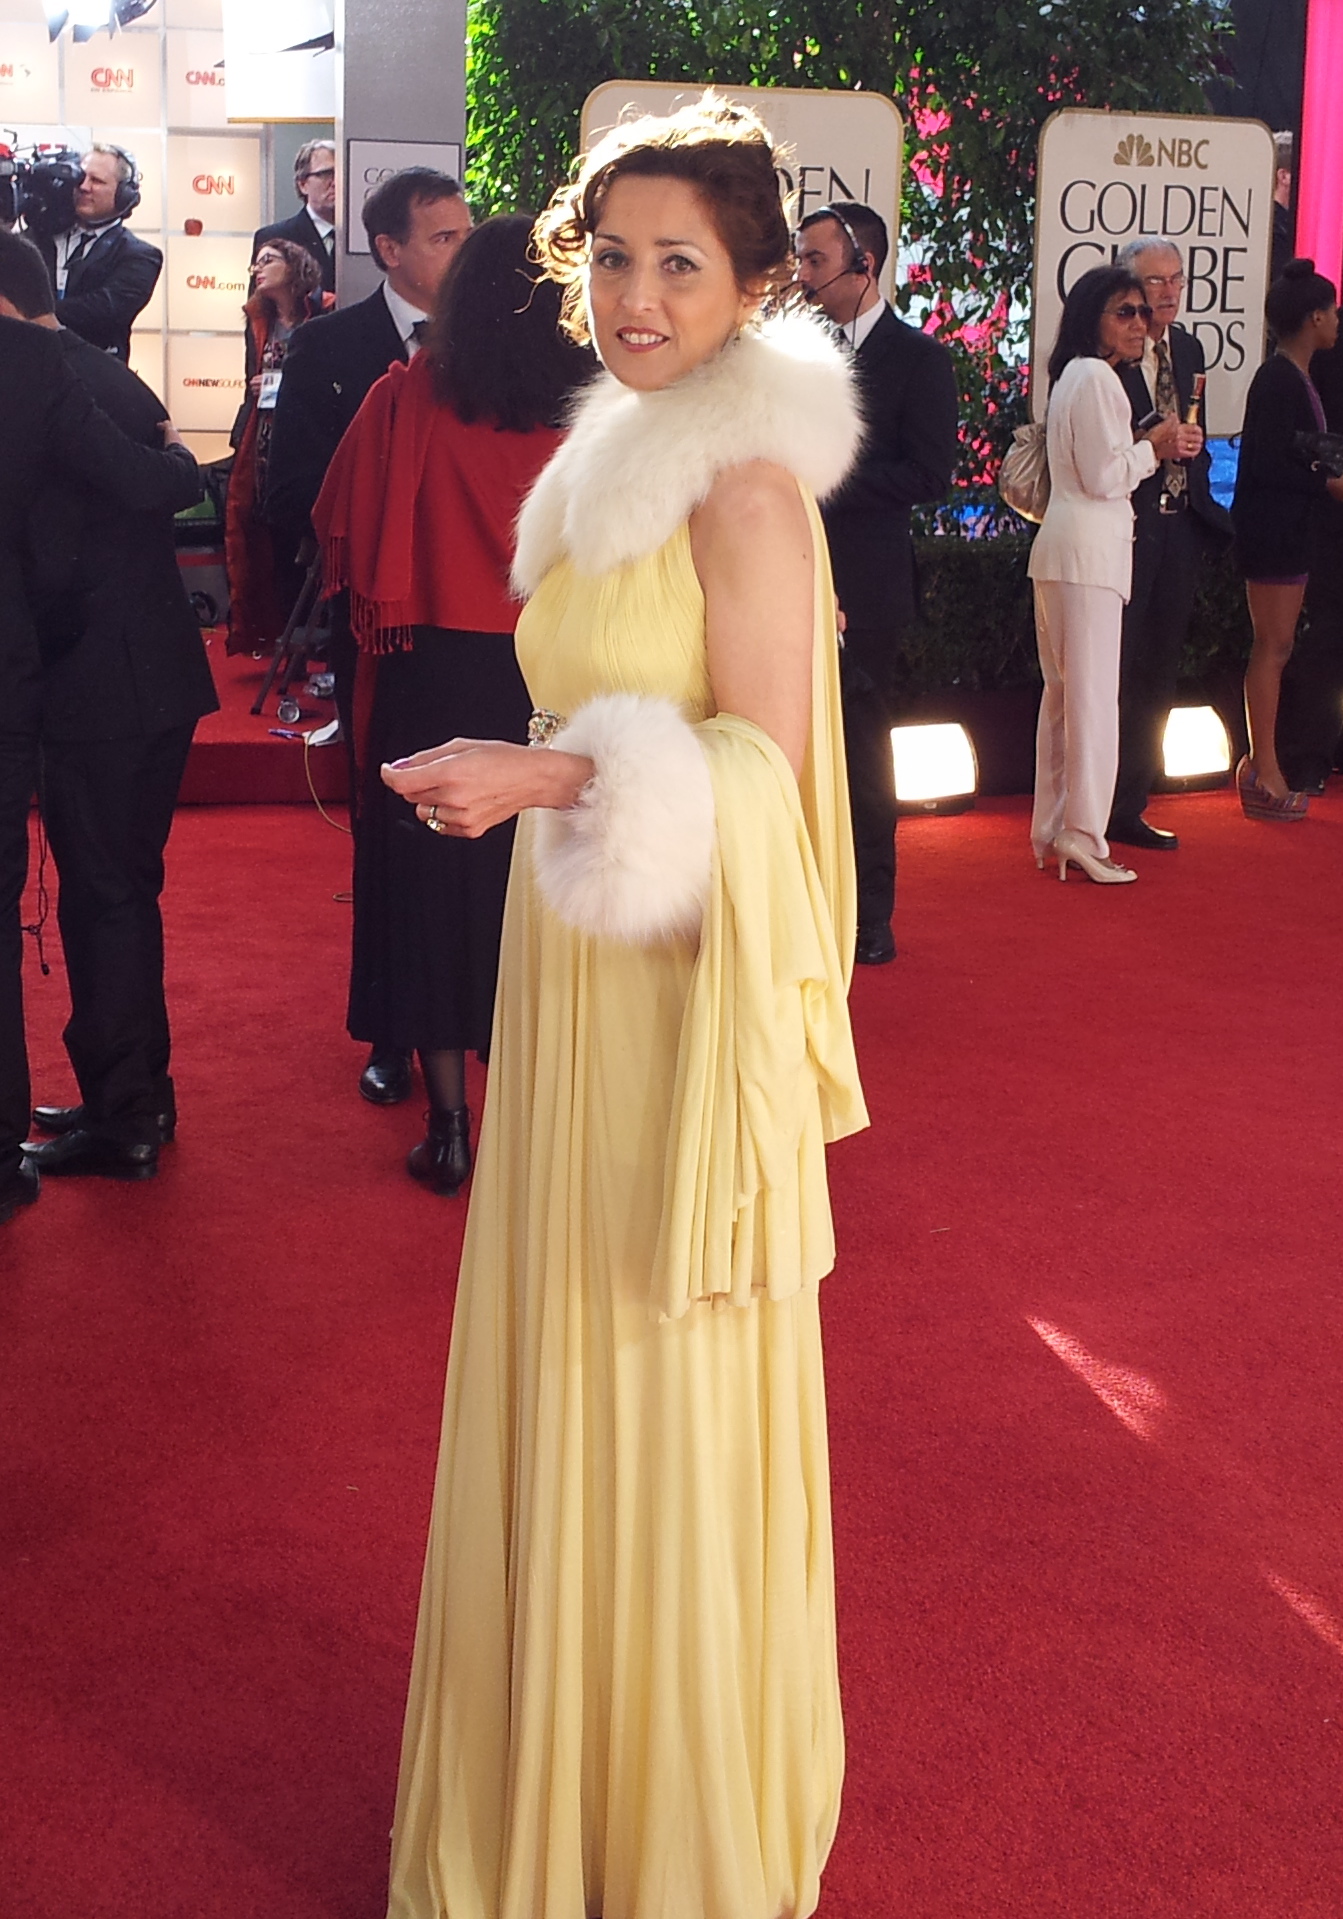 Esther Regina, actress, at Golden Globs Awards Ceremony